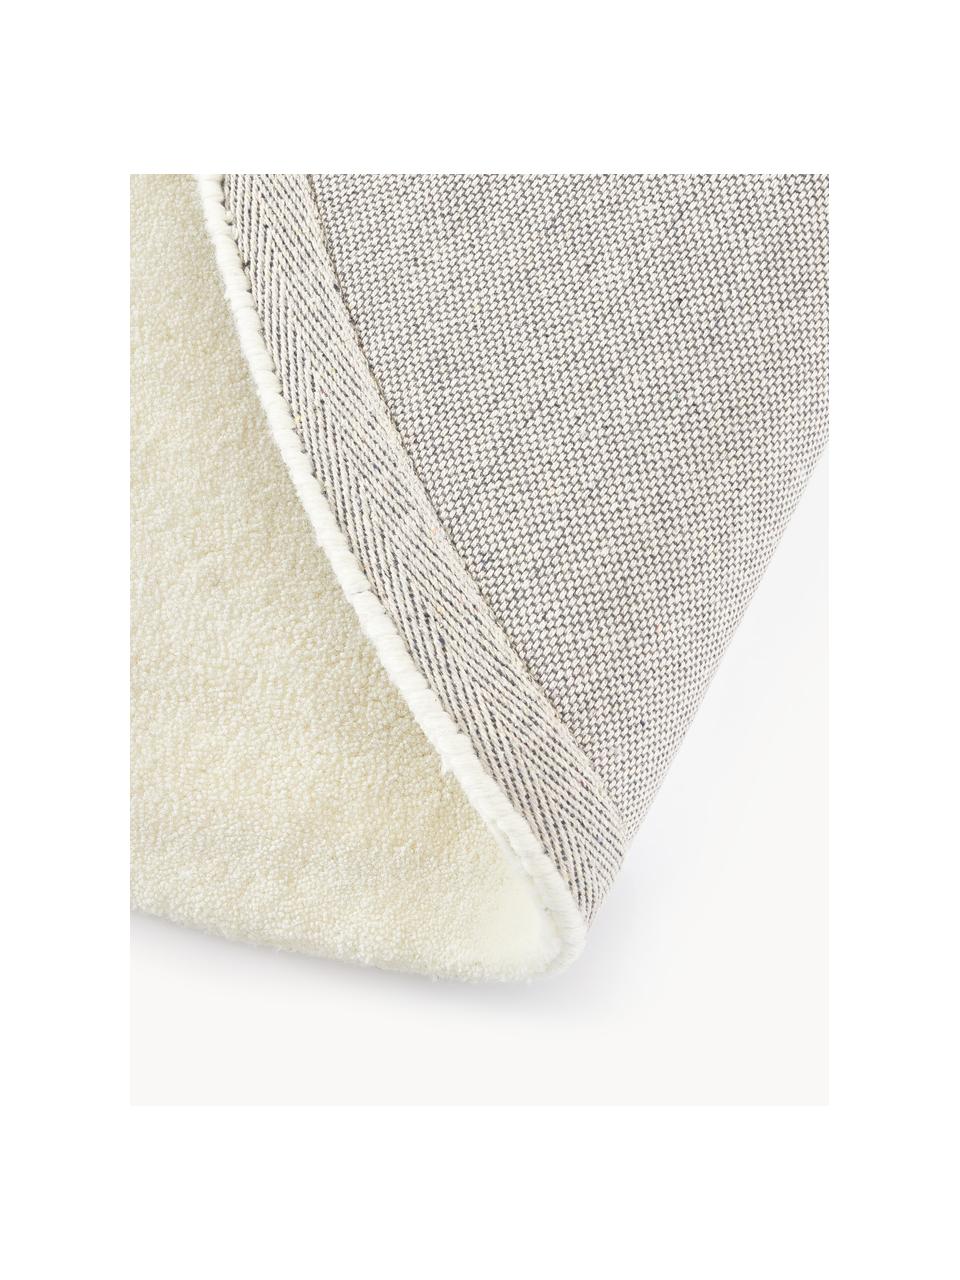 Tappeto rotondo in lana a pelo corto fatto a mano Jadie, Retro: 70% cotone, 30% poliester, Bianco crema, Ø 250 cm (taglia XL)